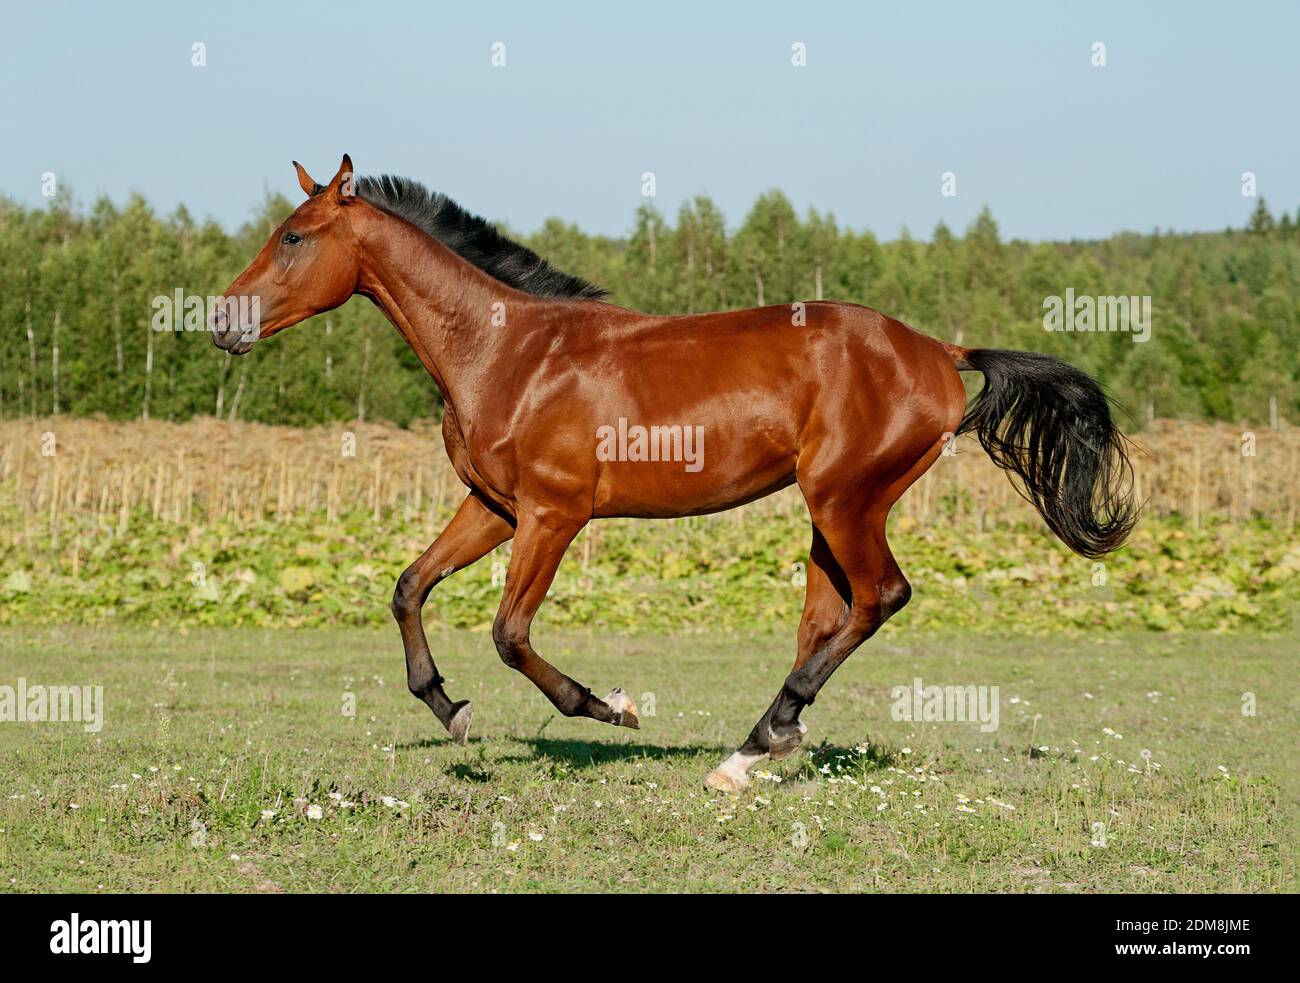 horse running Stock Photo